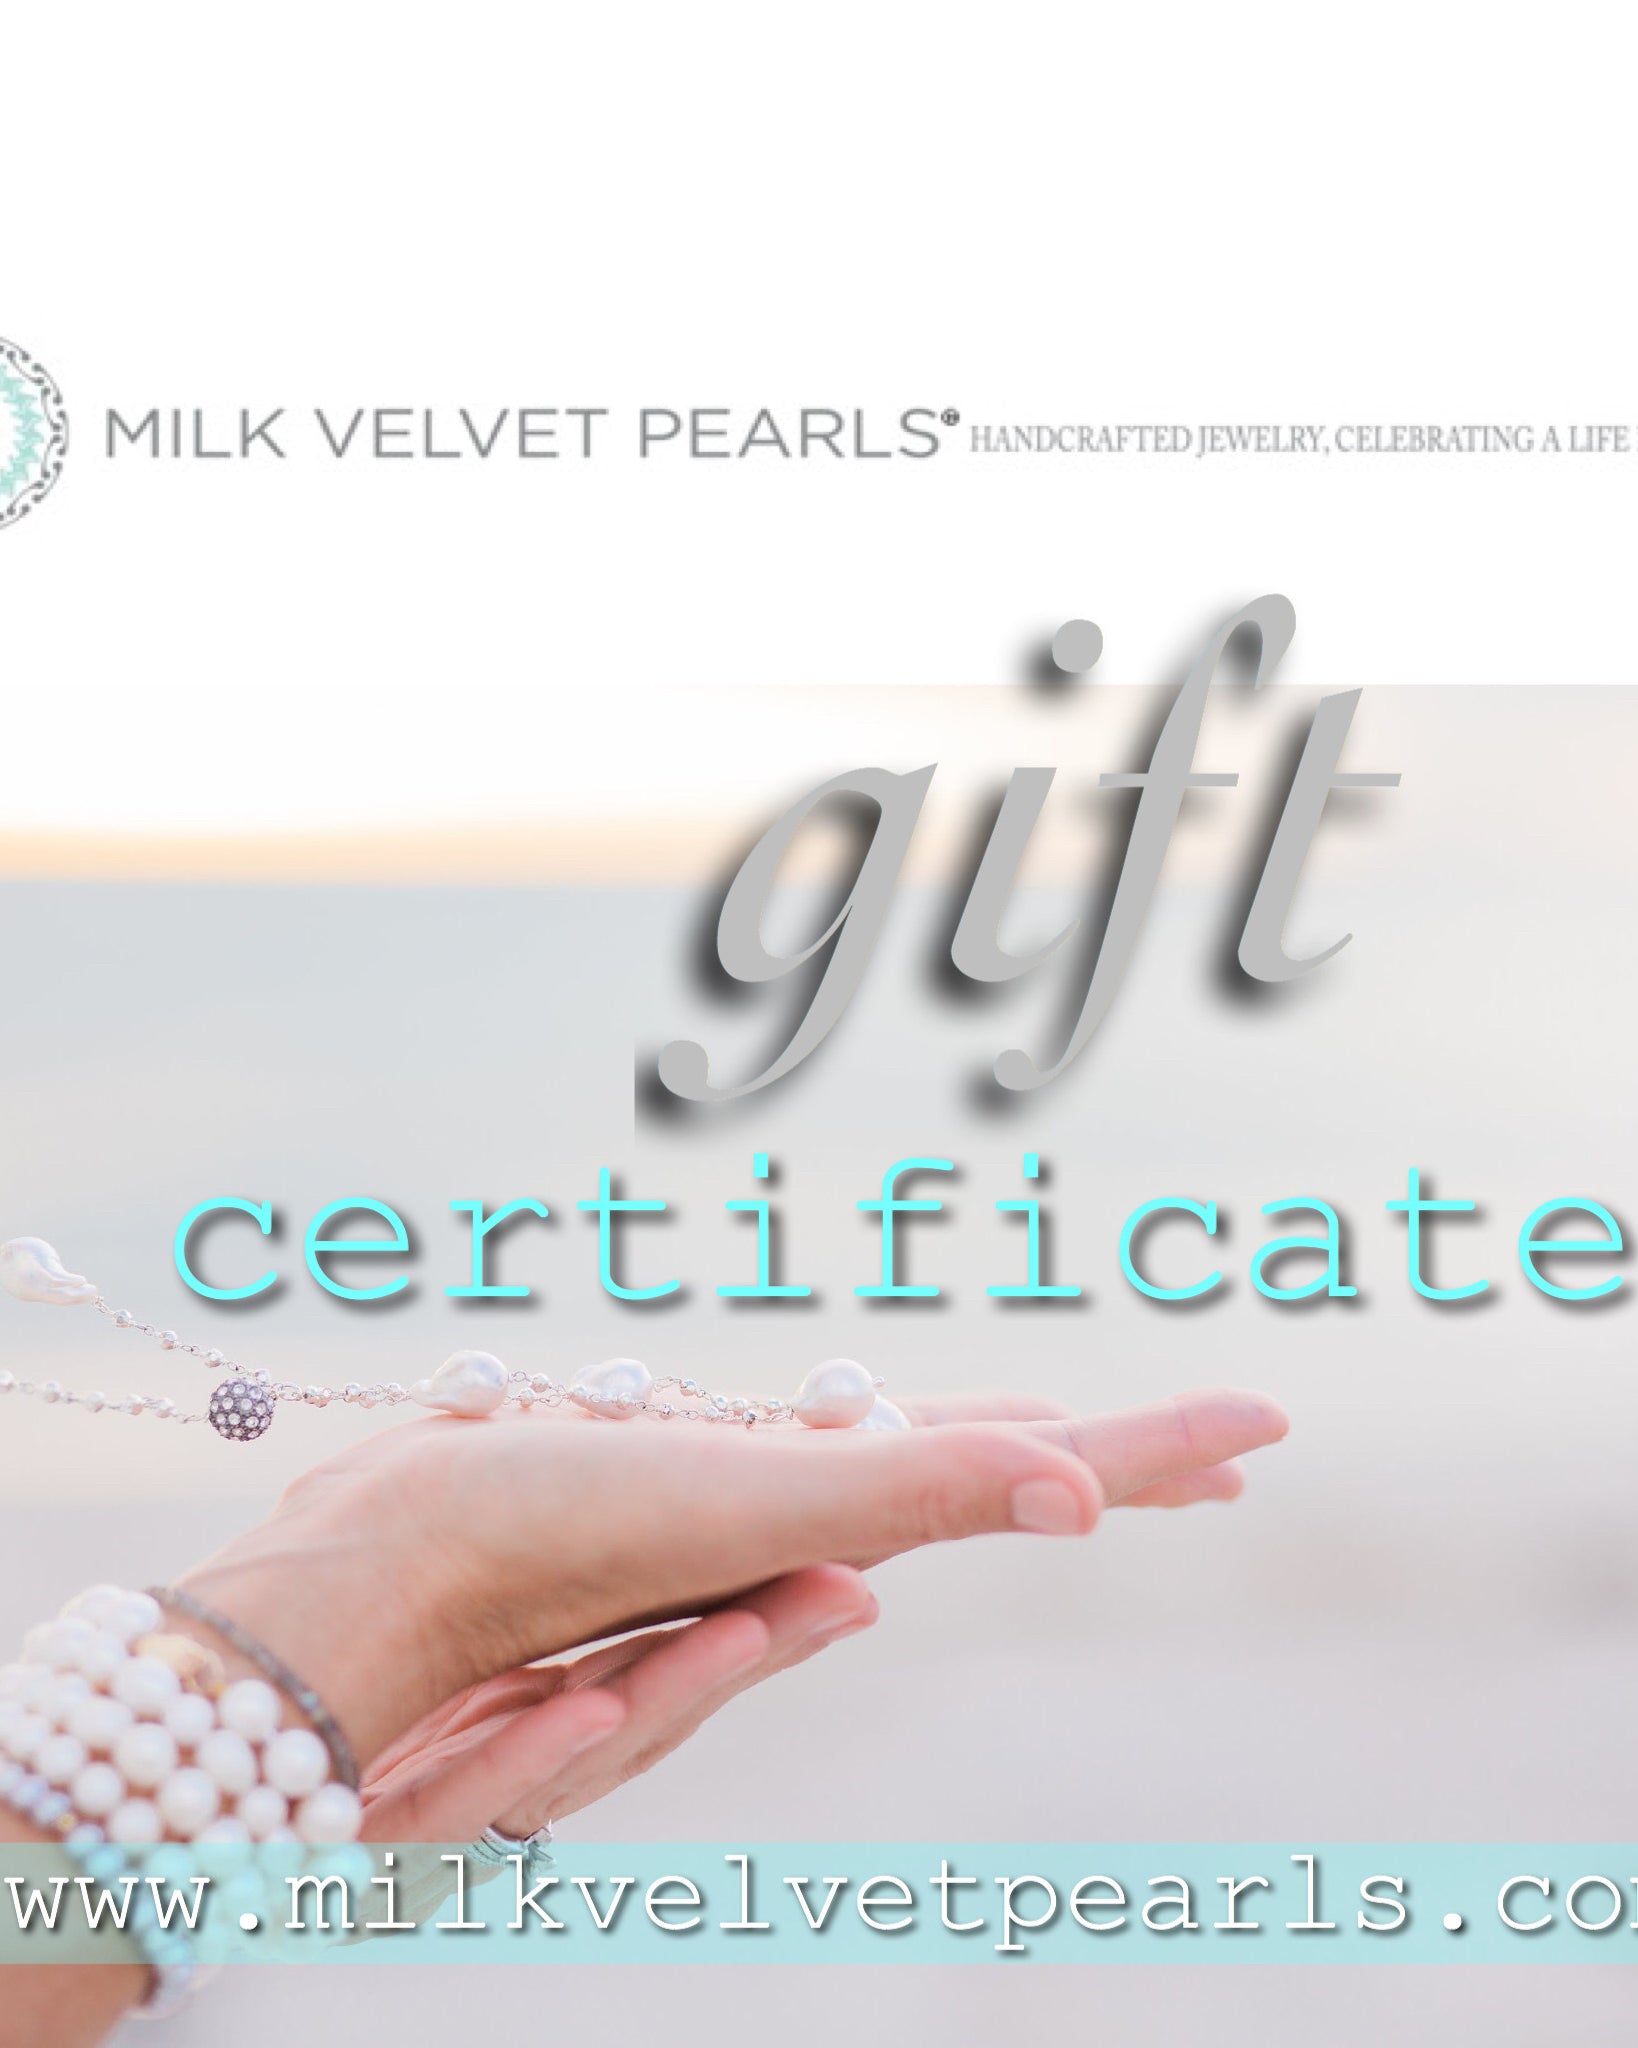 MVP Gift Certificate, Milk Velvet Pearls Gift Card, E Card, Pearl Jewelry Gift Certificate, Custom Pearl Jewelry Gift Card, Sarah Faulkner Safety Harbor Florida